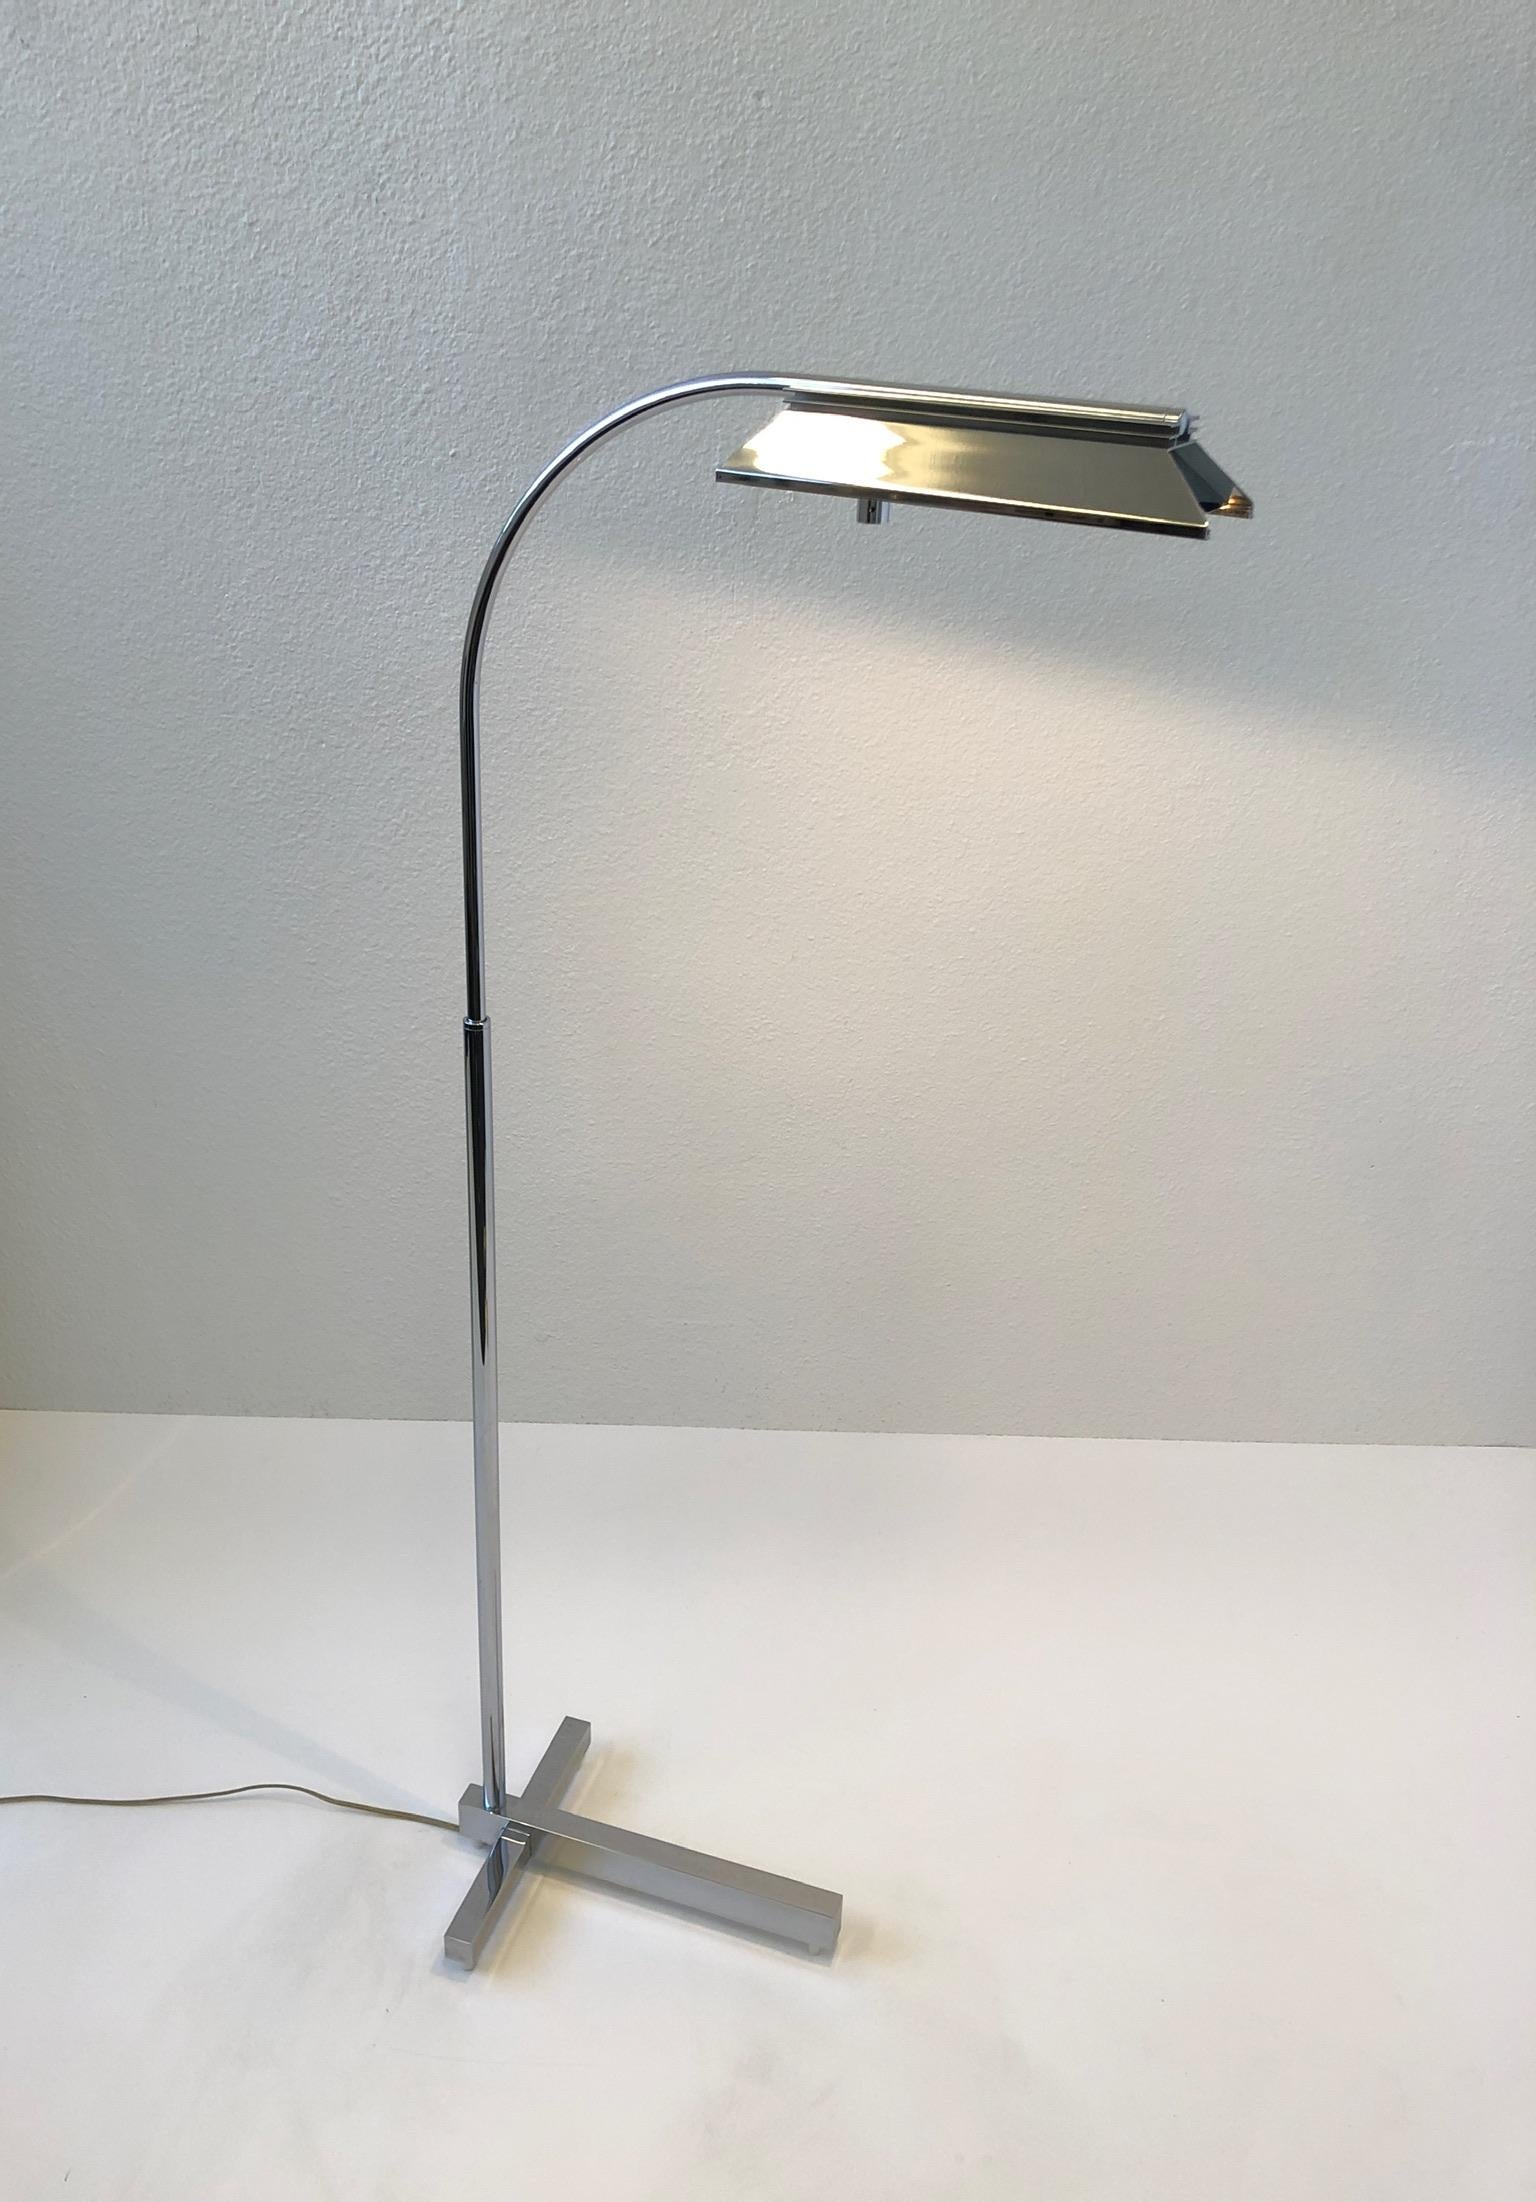 lampadaire réglable en chrome poli des années 1970, conçu par Casella. 
Peut être tourné à 360* et peut être abaissé jusqu'à 39,25